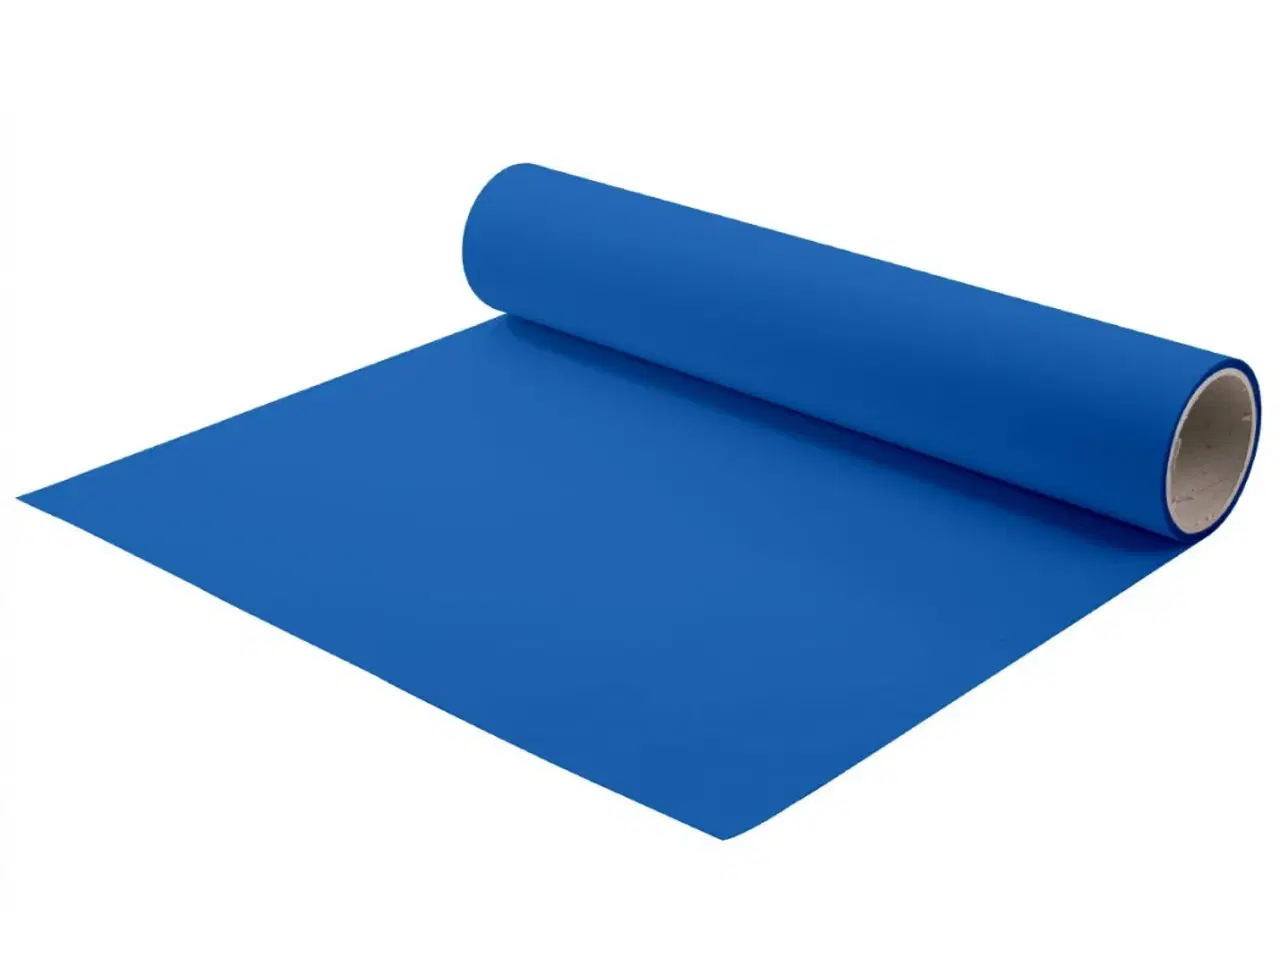 Billede 1 - Chemica Hotmark - Stillehavsblå - Pacific Blue - 433 - tekstil folie